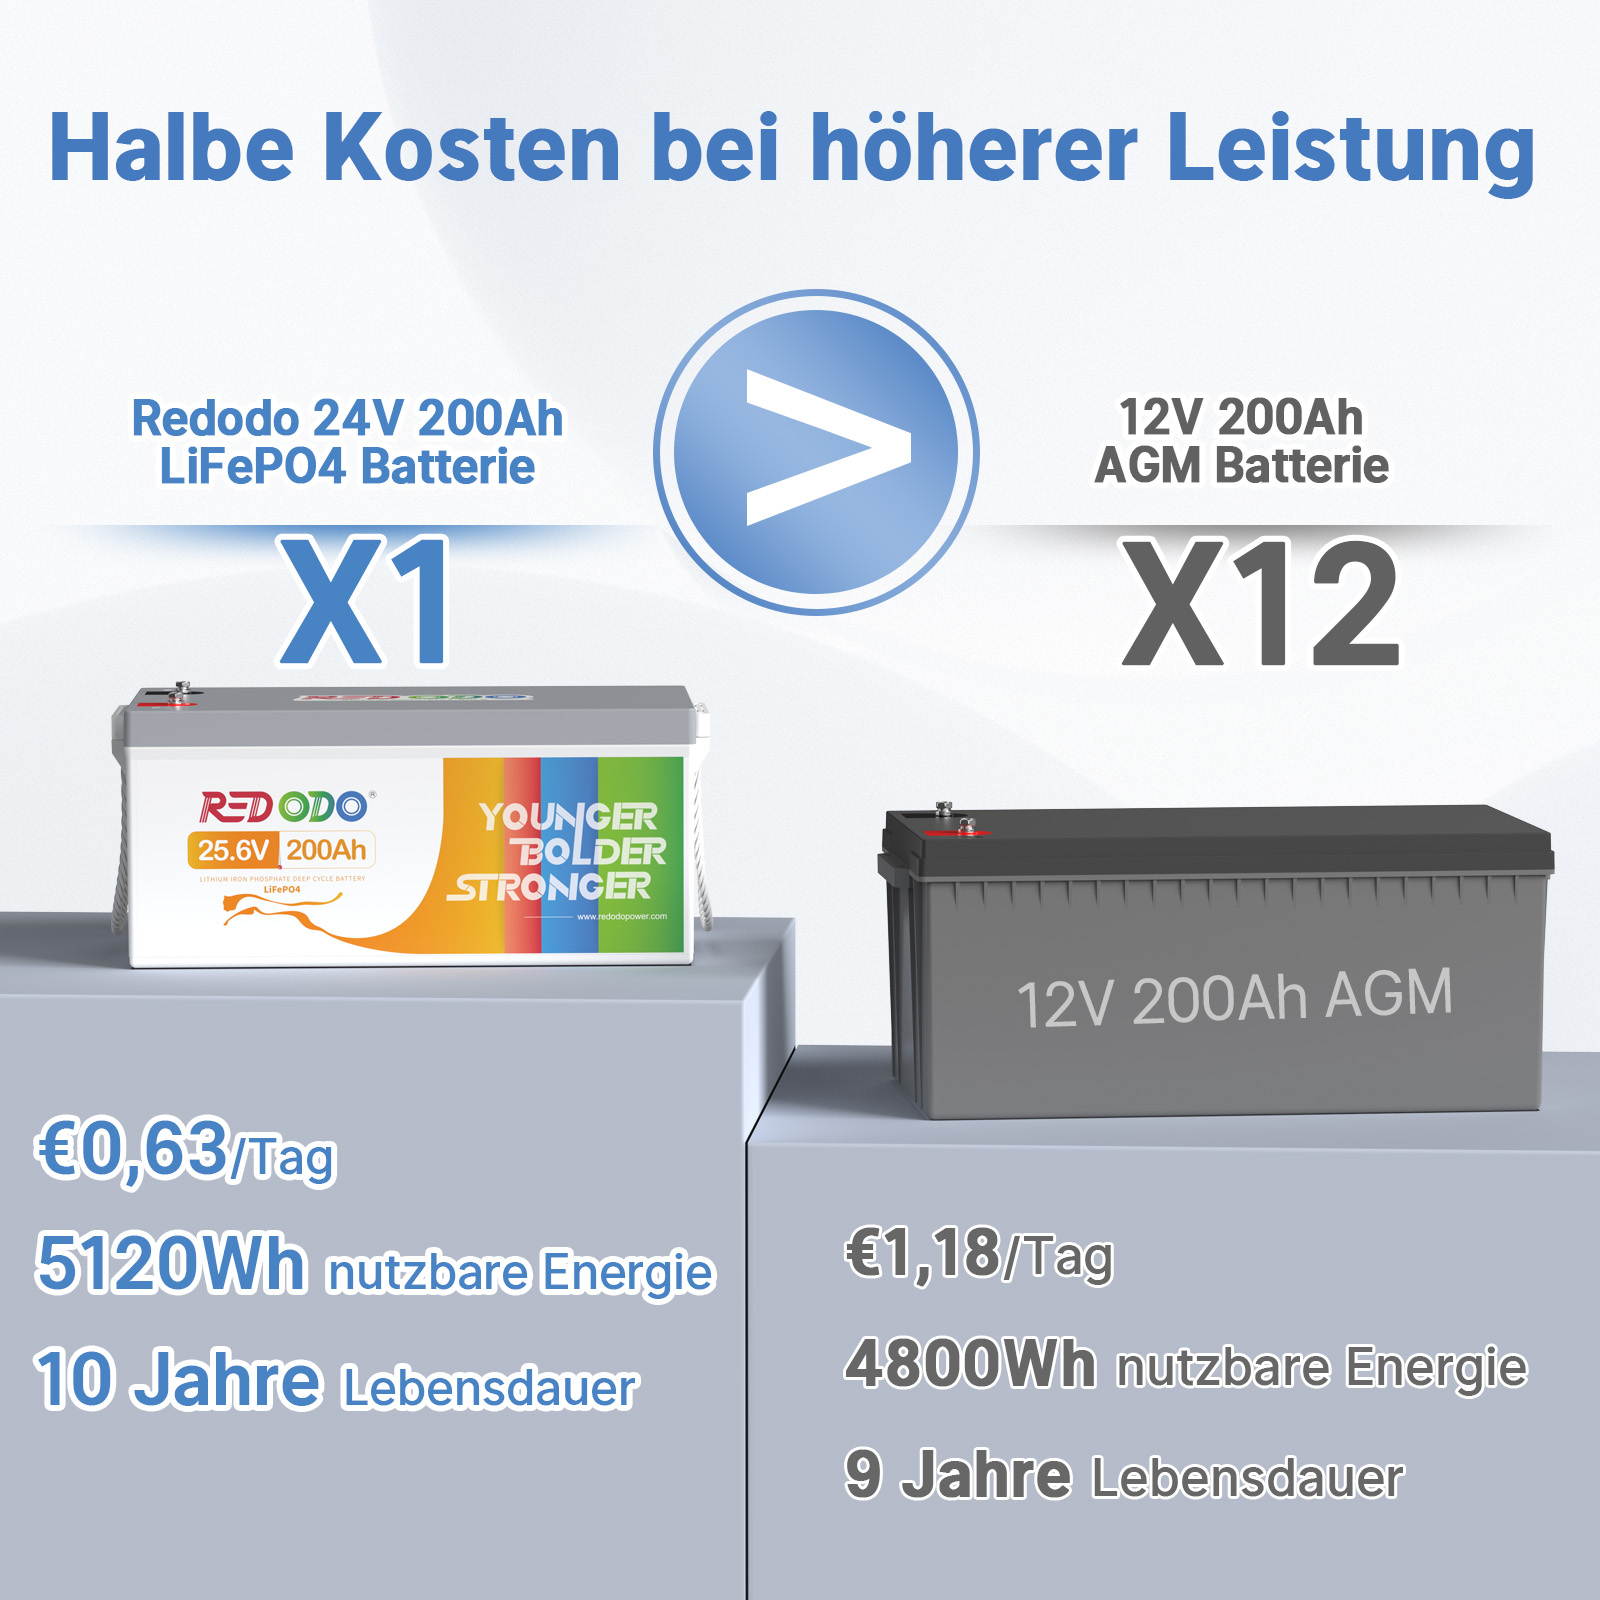 Befreiung von 19% MwSt - Redodo 24V 200Ah LiFePO4 Batterie | 5,12kWh & 5,12kW - nur für Wohngebäude und Deutschland